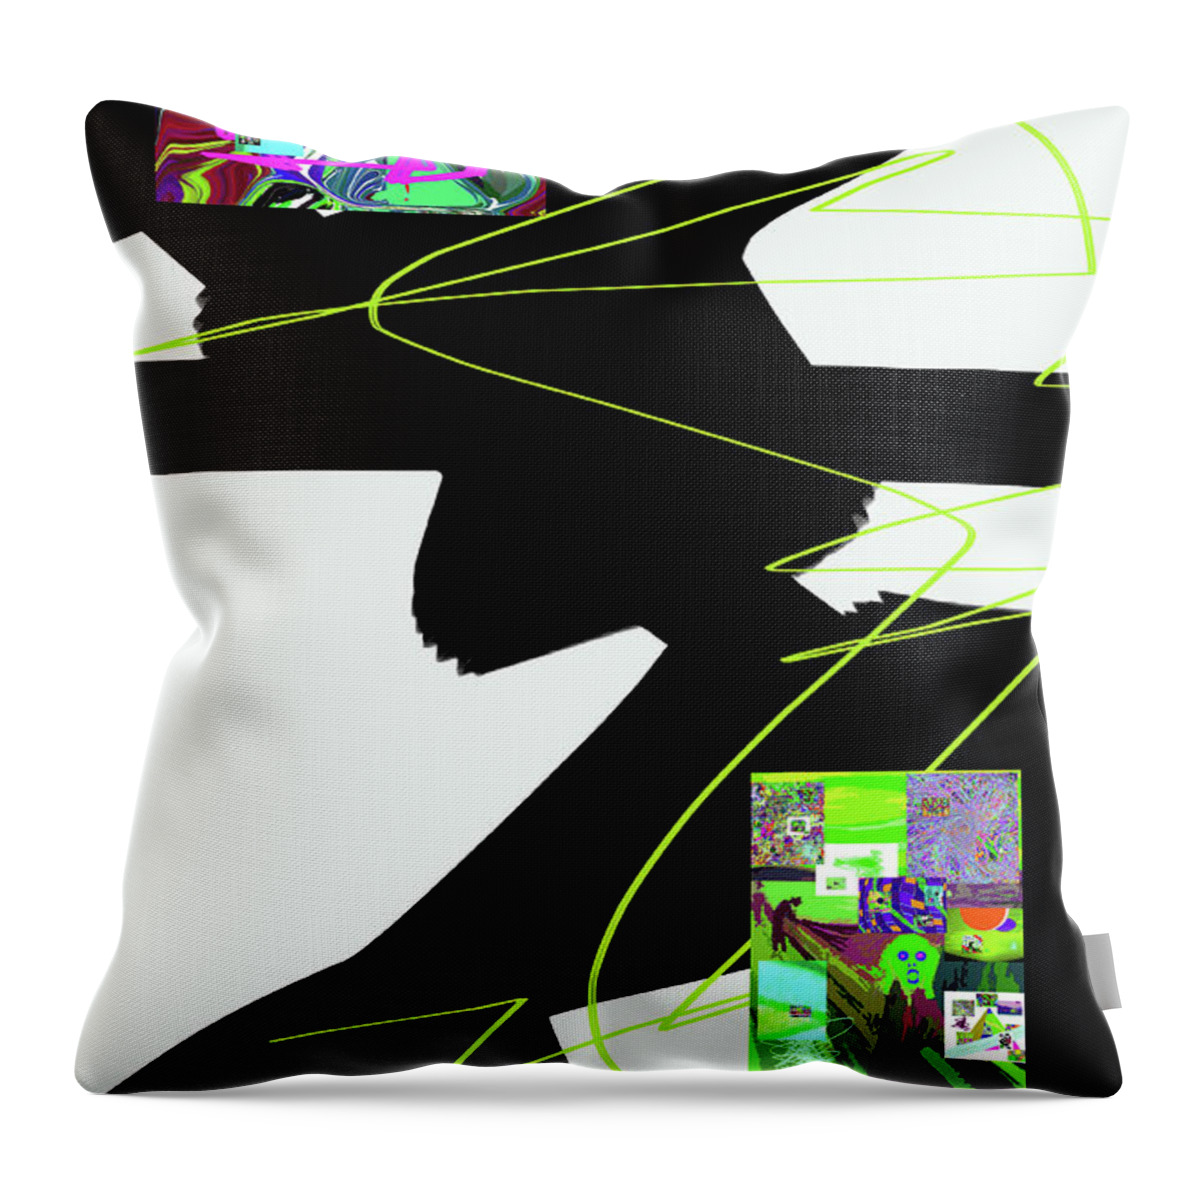 Walter Paul Bebirian Throw Pillow featuring the digital art 6-22-2015dabcdefghijklmnopqrt by Walter Paul Bebirian